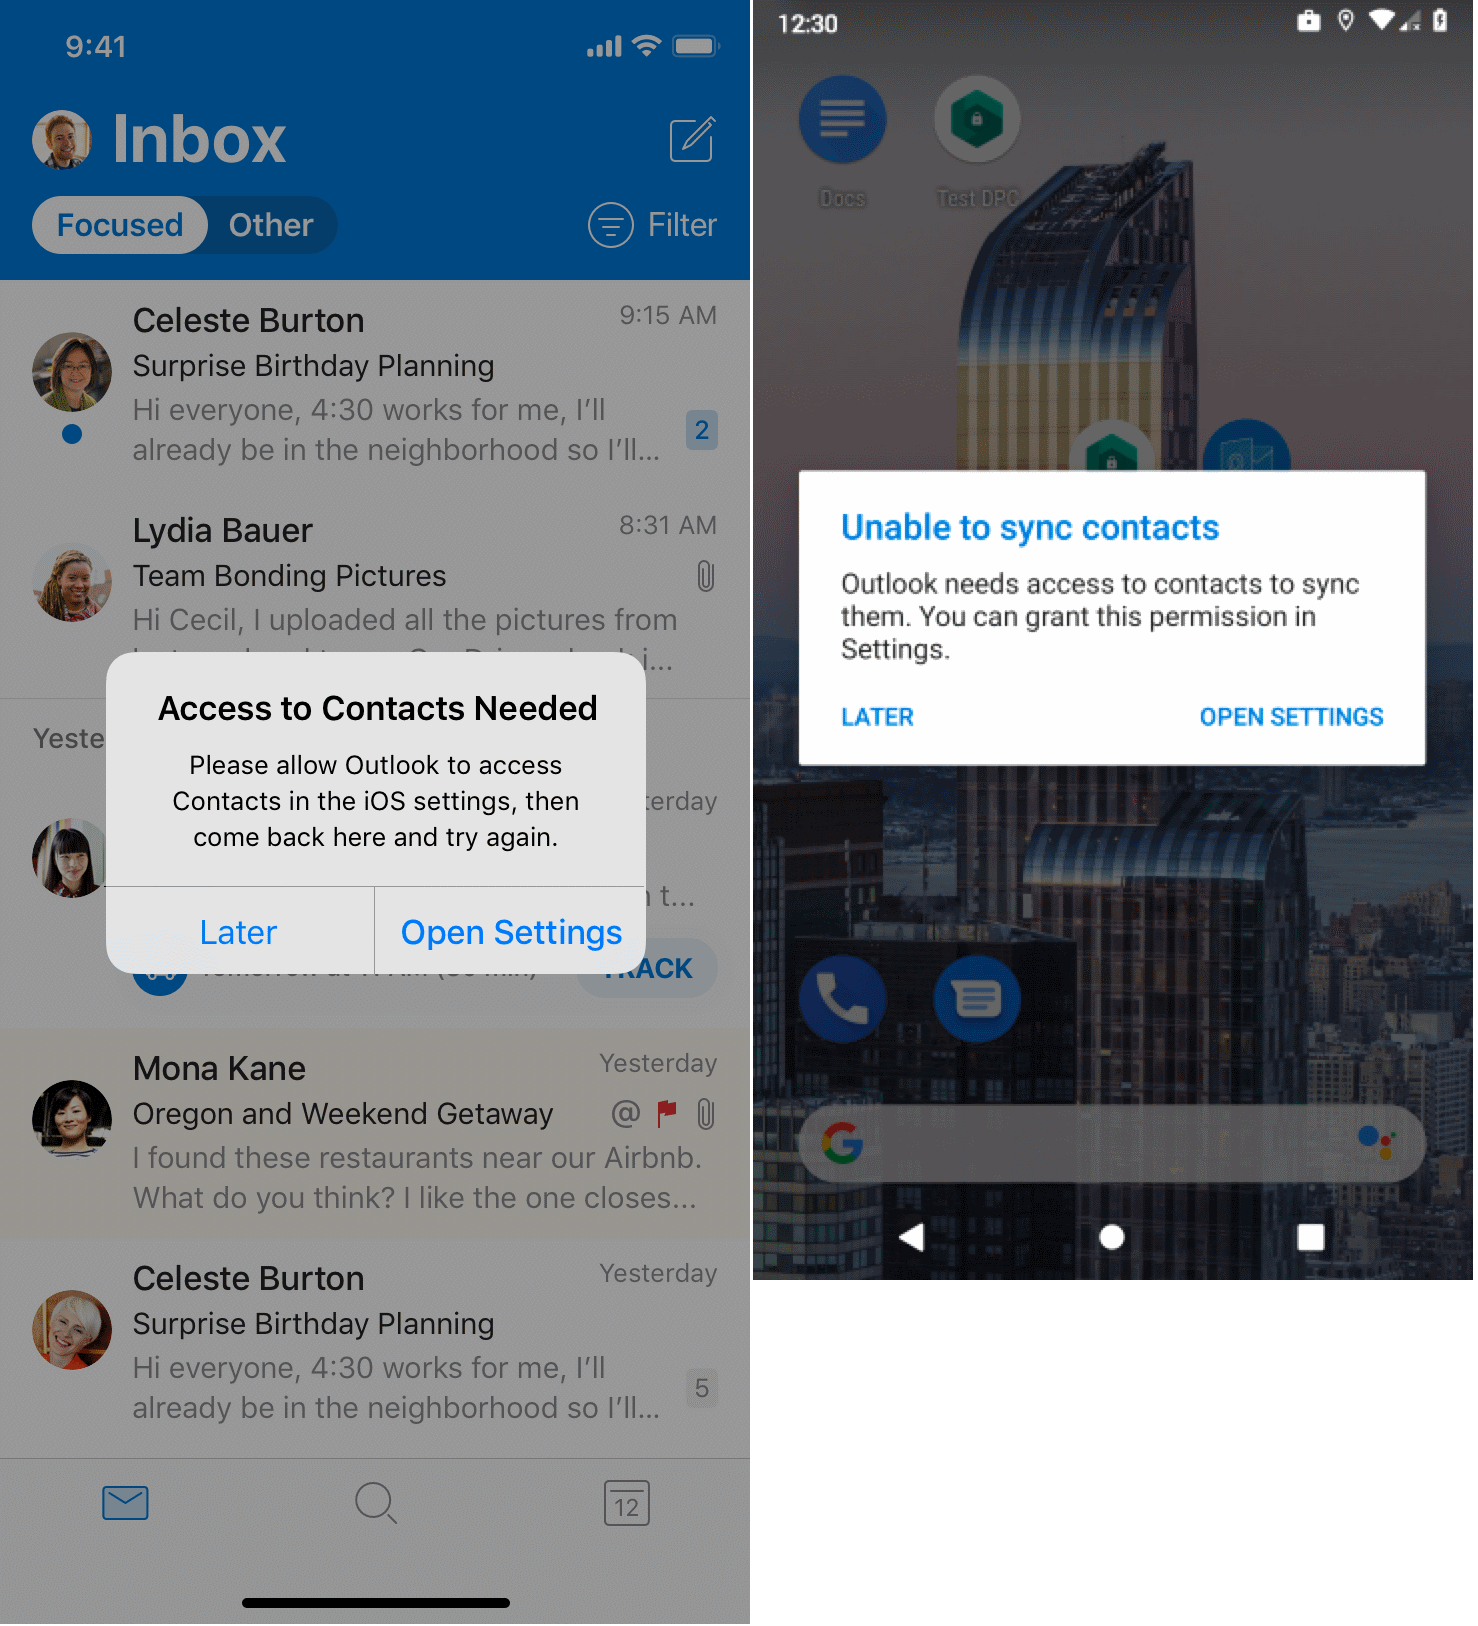 пользователю будет предложено разрешить Outlook доступ к собственному приложению 